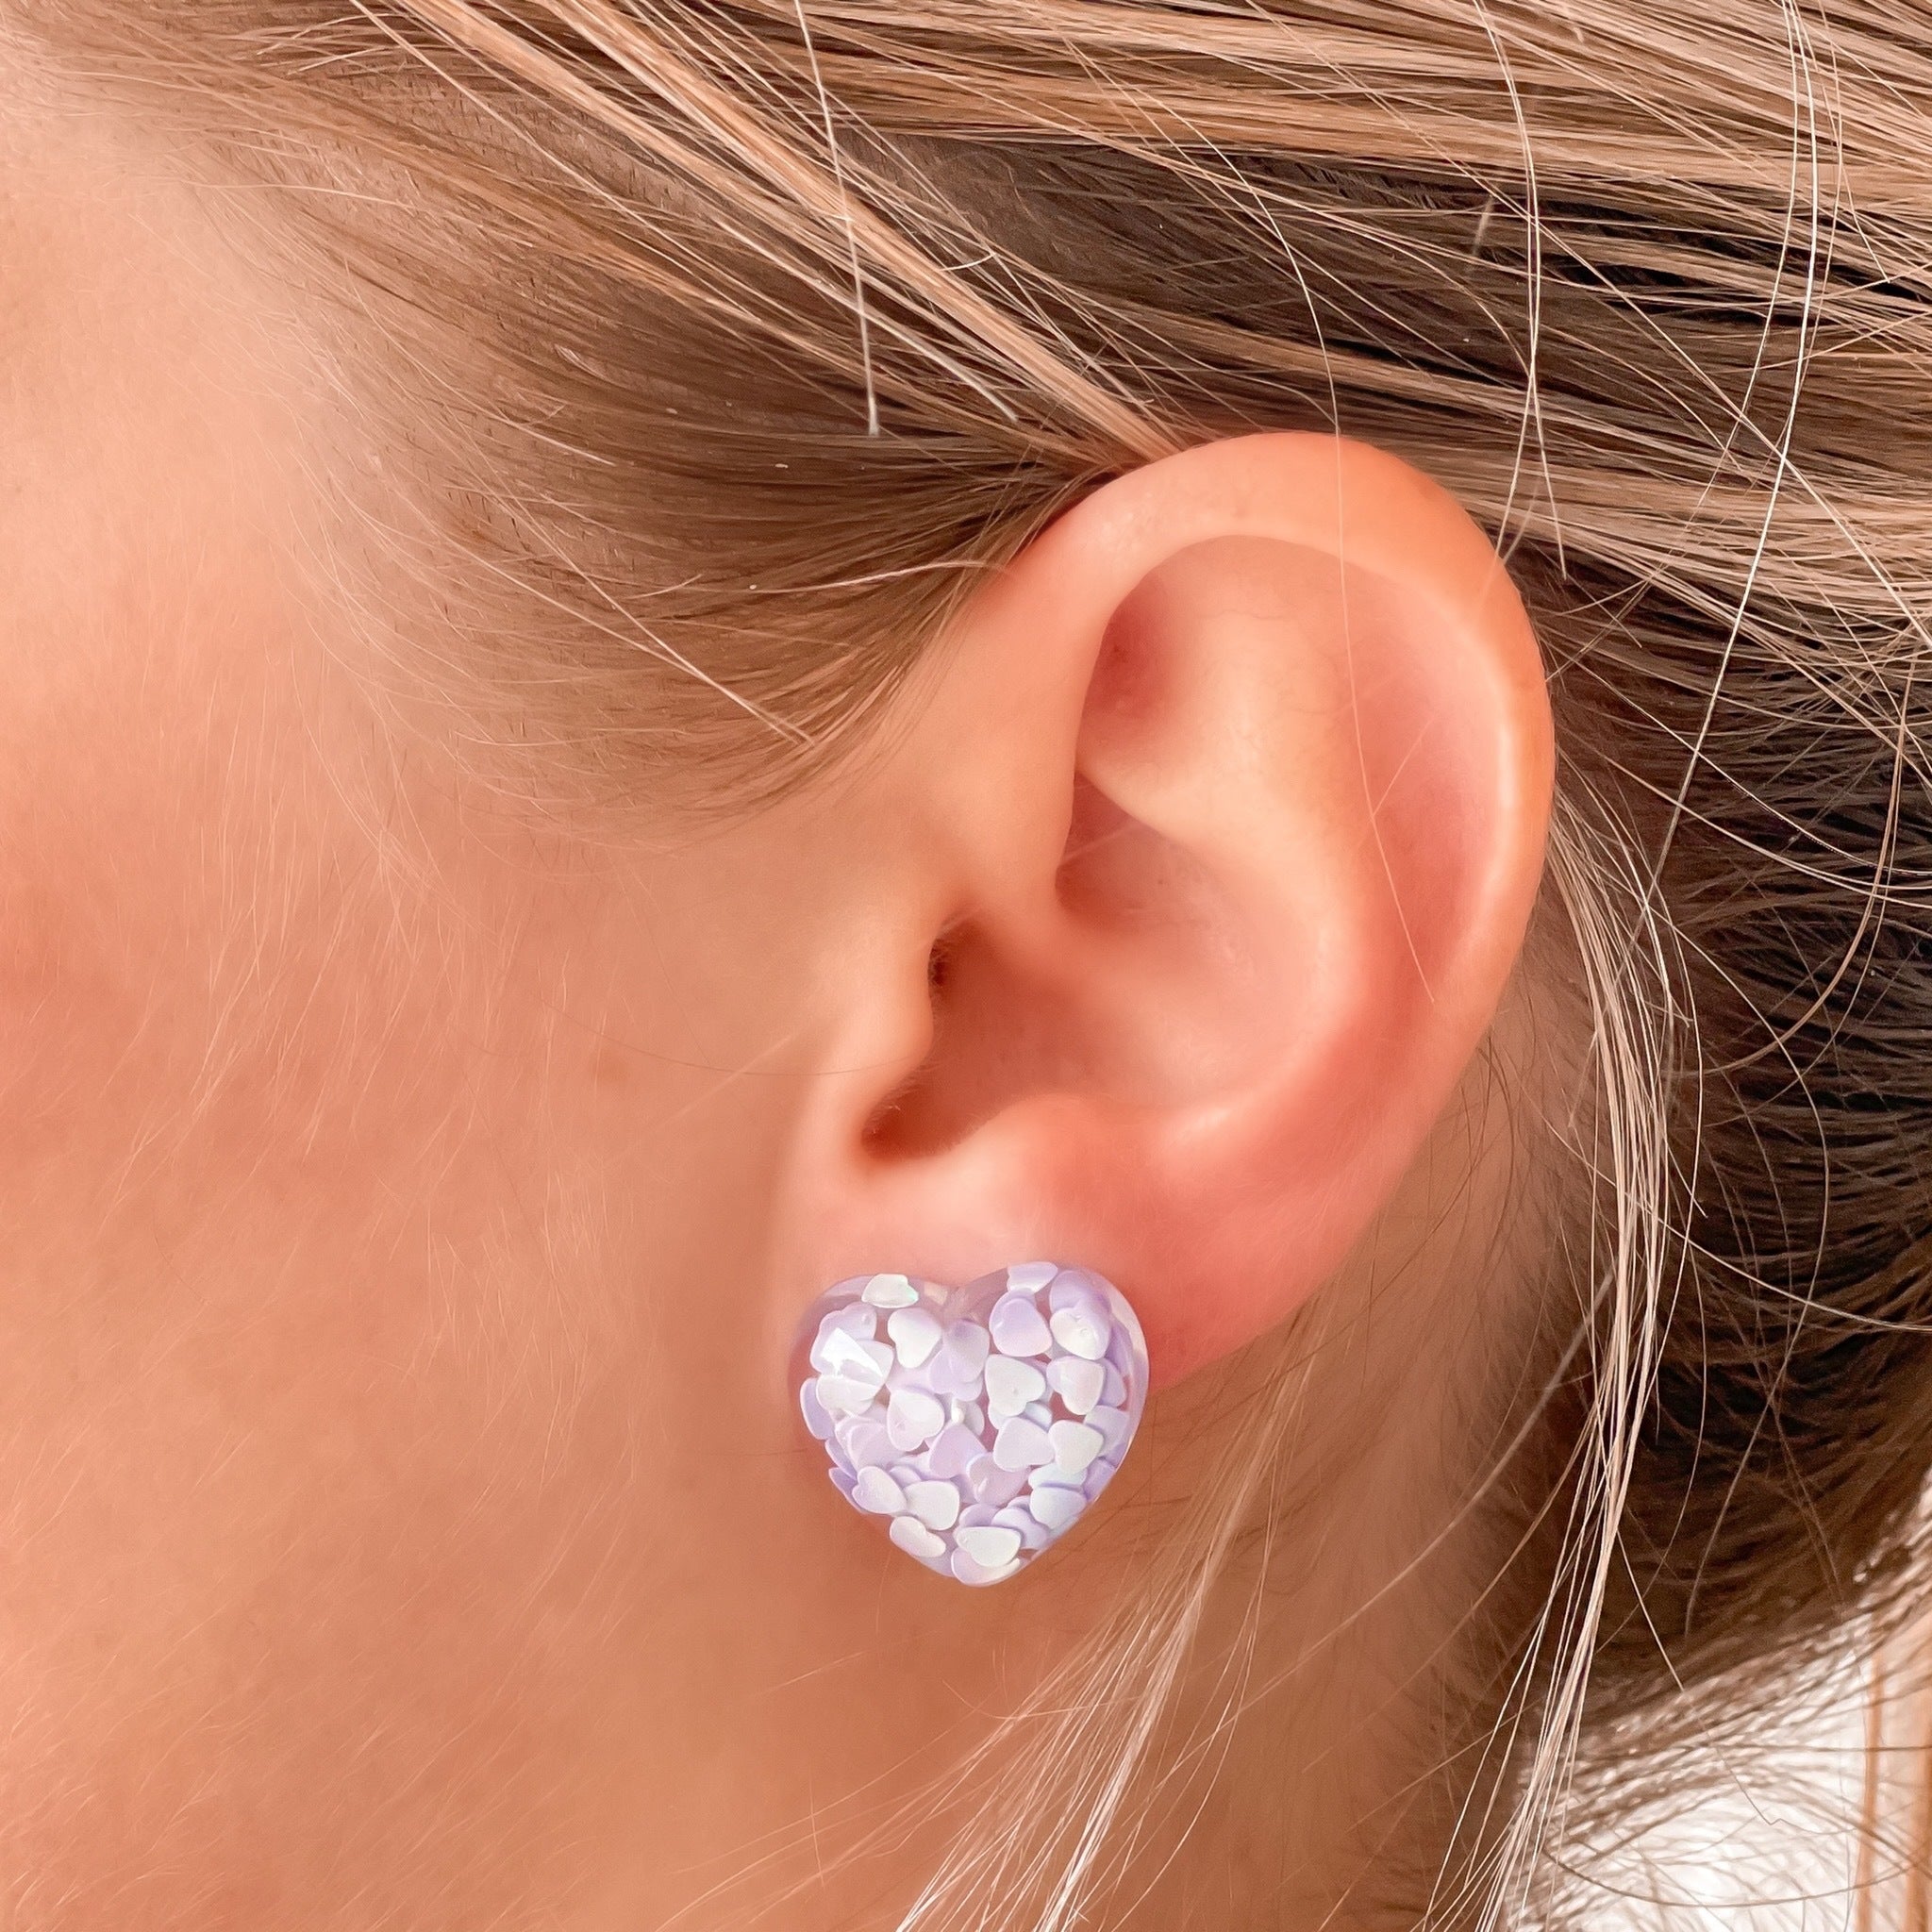 Heart Confetti Stud Earrings - Purple